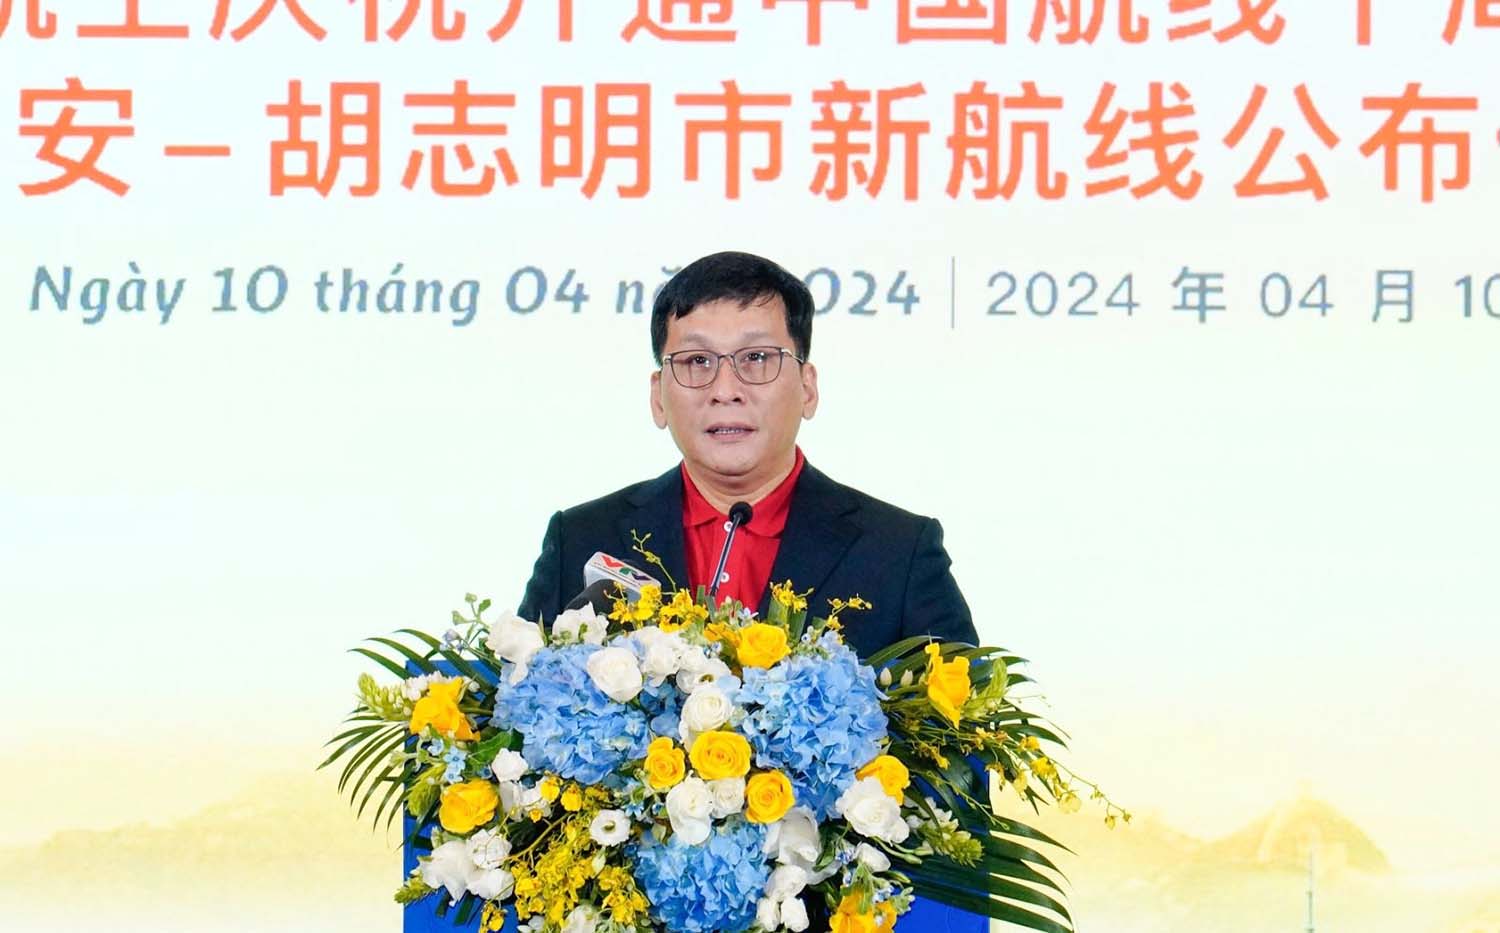 Tổng giám đốc Vietjet Đinh Việt Phương phát biểu tại sự kiện. Ảnh: Phương Tuyền